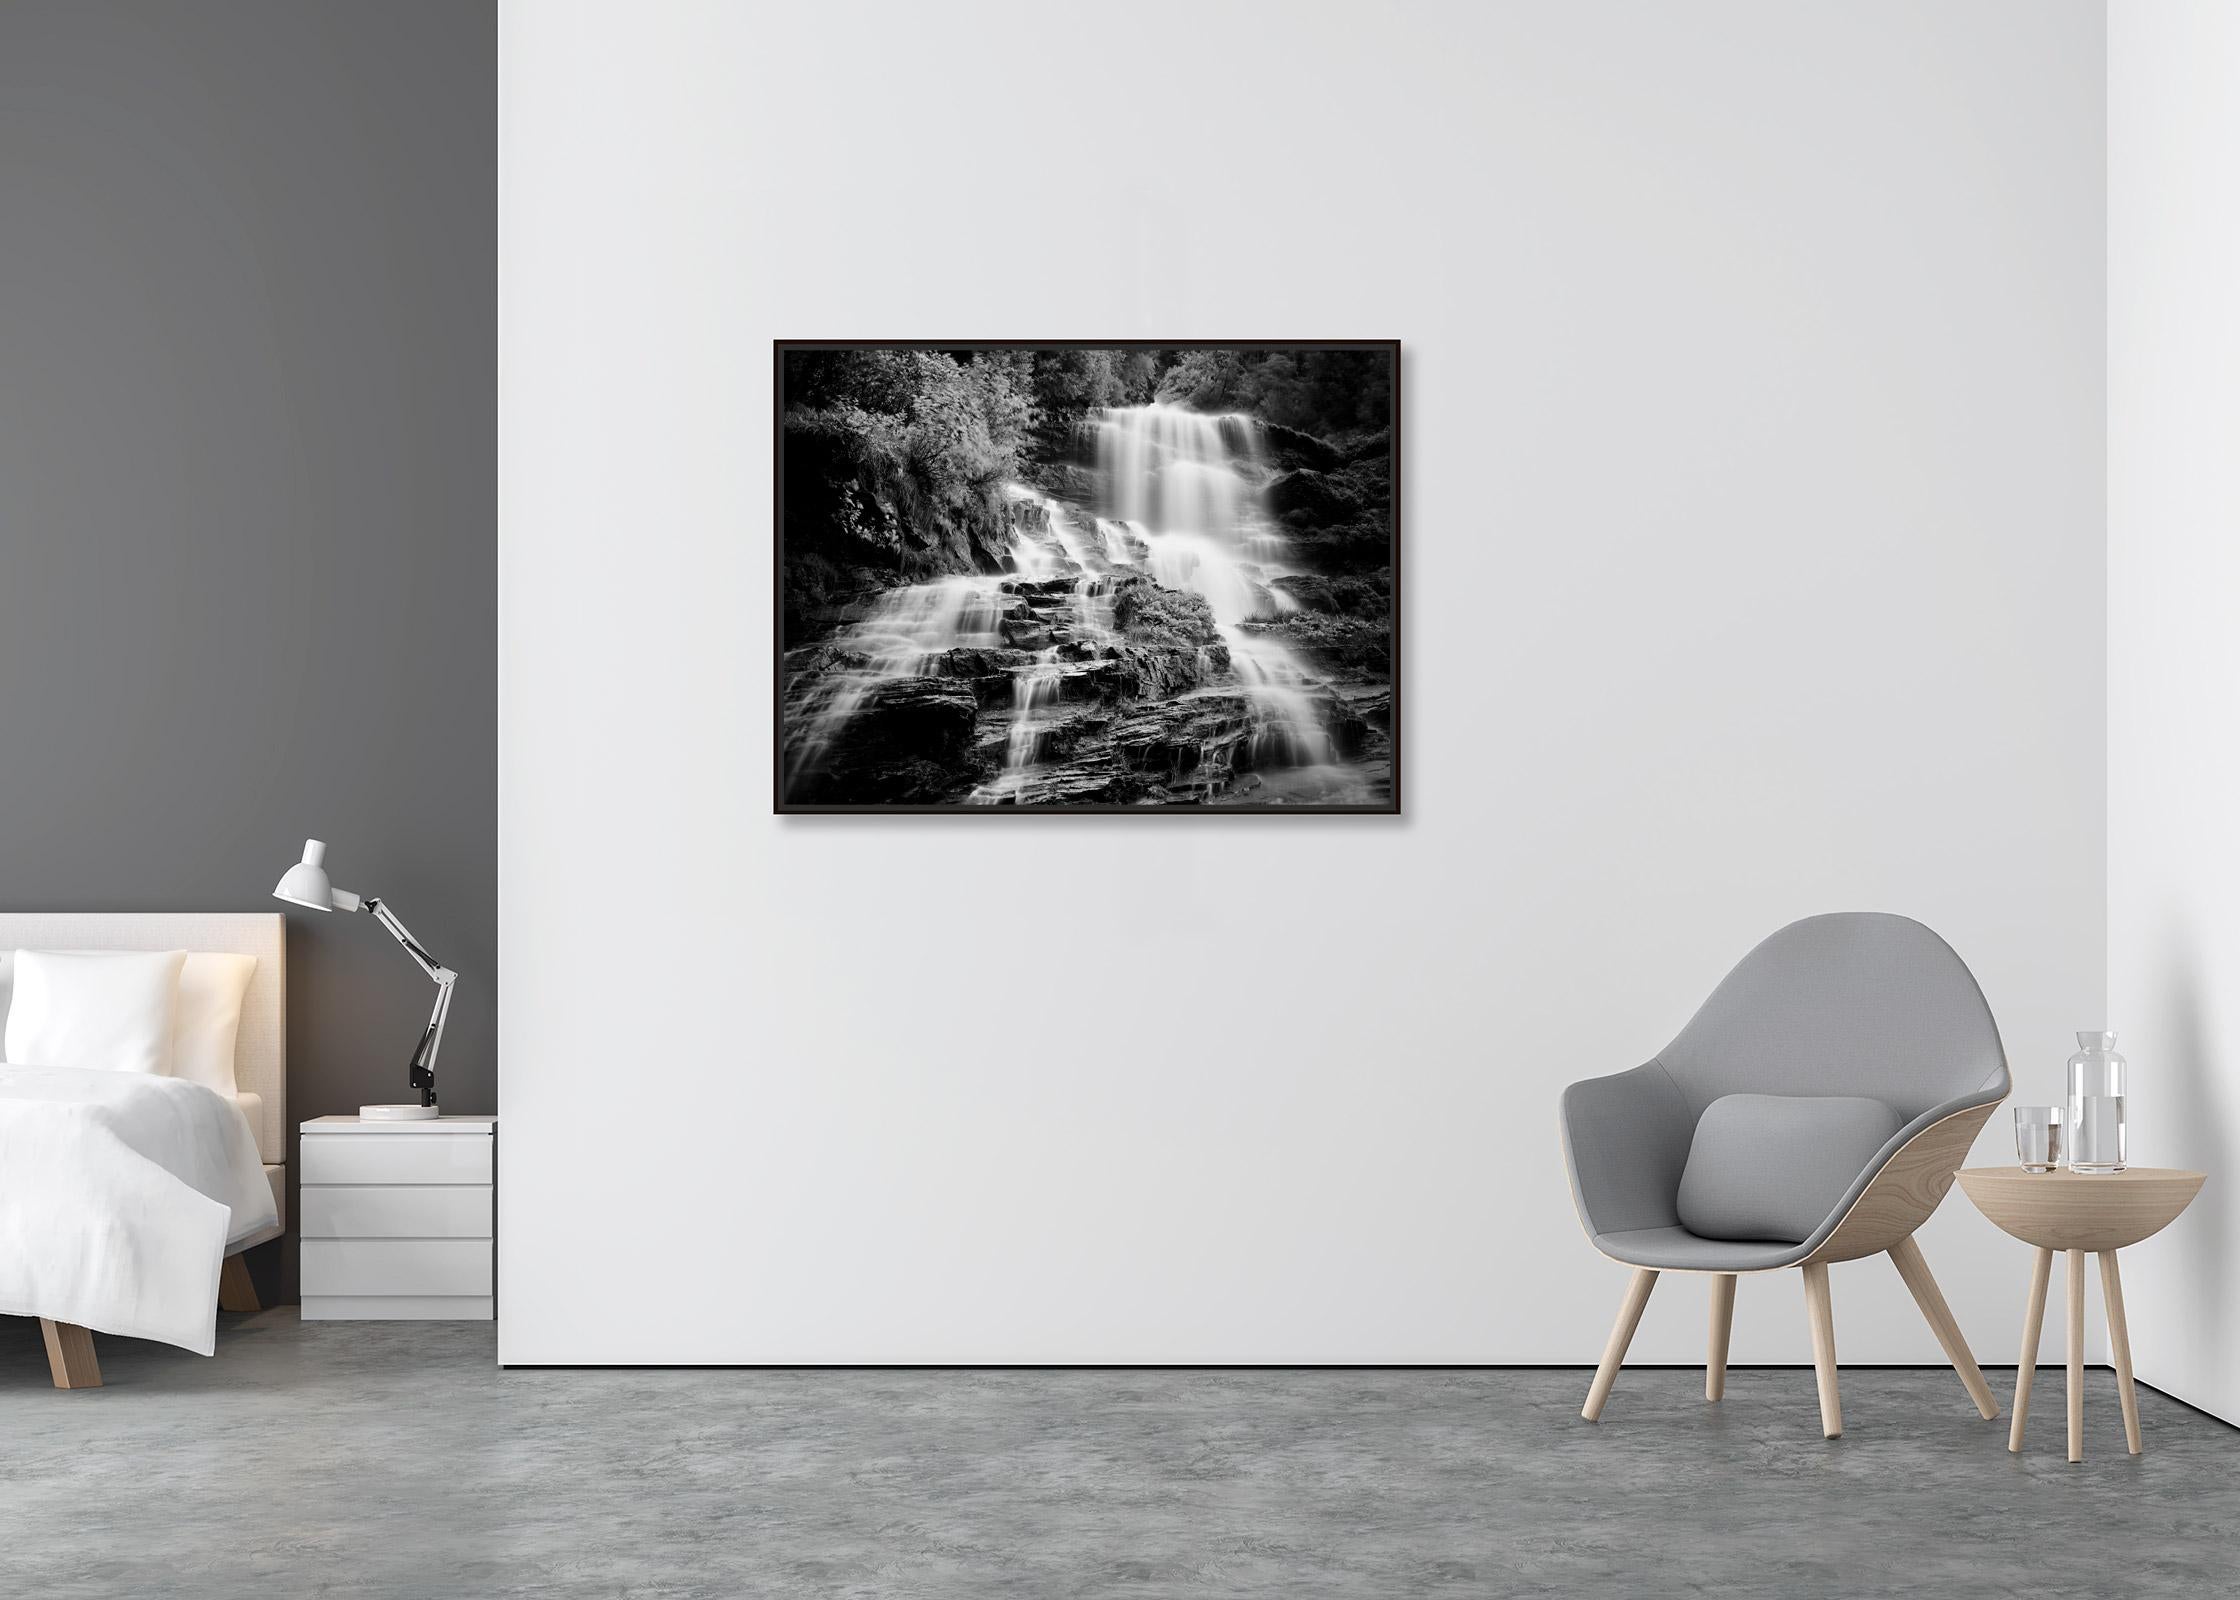 Klockelefall, chute d'eau, ruisseau de montagne, photographie en noir et blanc, paysage - Contemporain Photograph par Gerald Berghammer